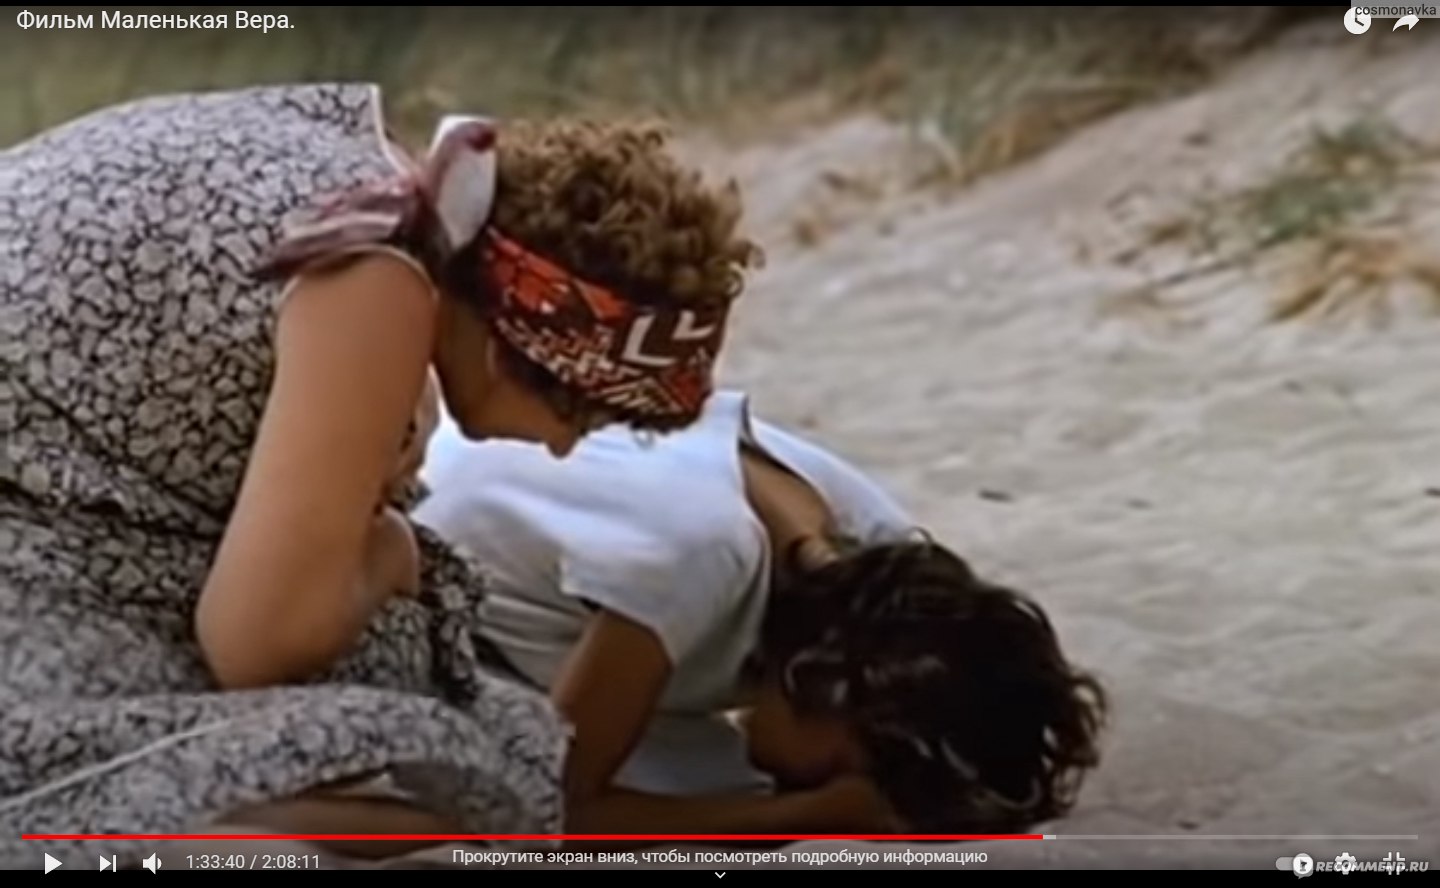 Маленькая Вера (1988, фильм) - «Идеальное кино. Мариуполь 1980-х и маленькая  Вера: разврат и грязь или все-таки прекрасный реализм?» | отзывы